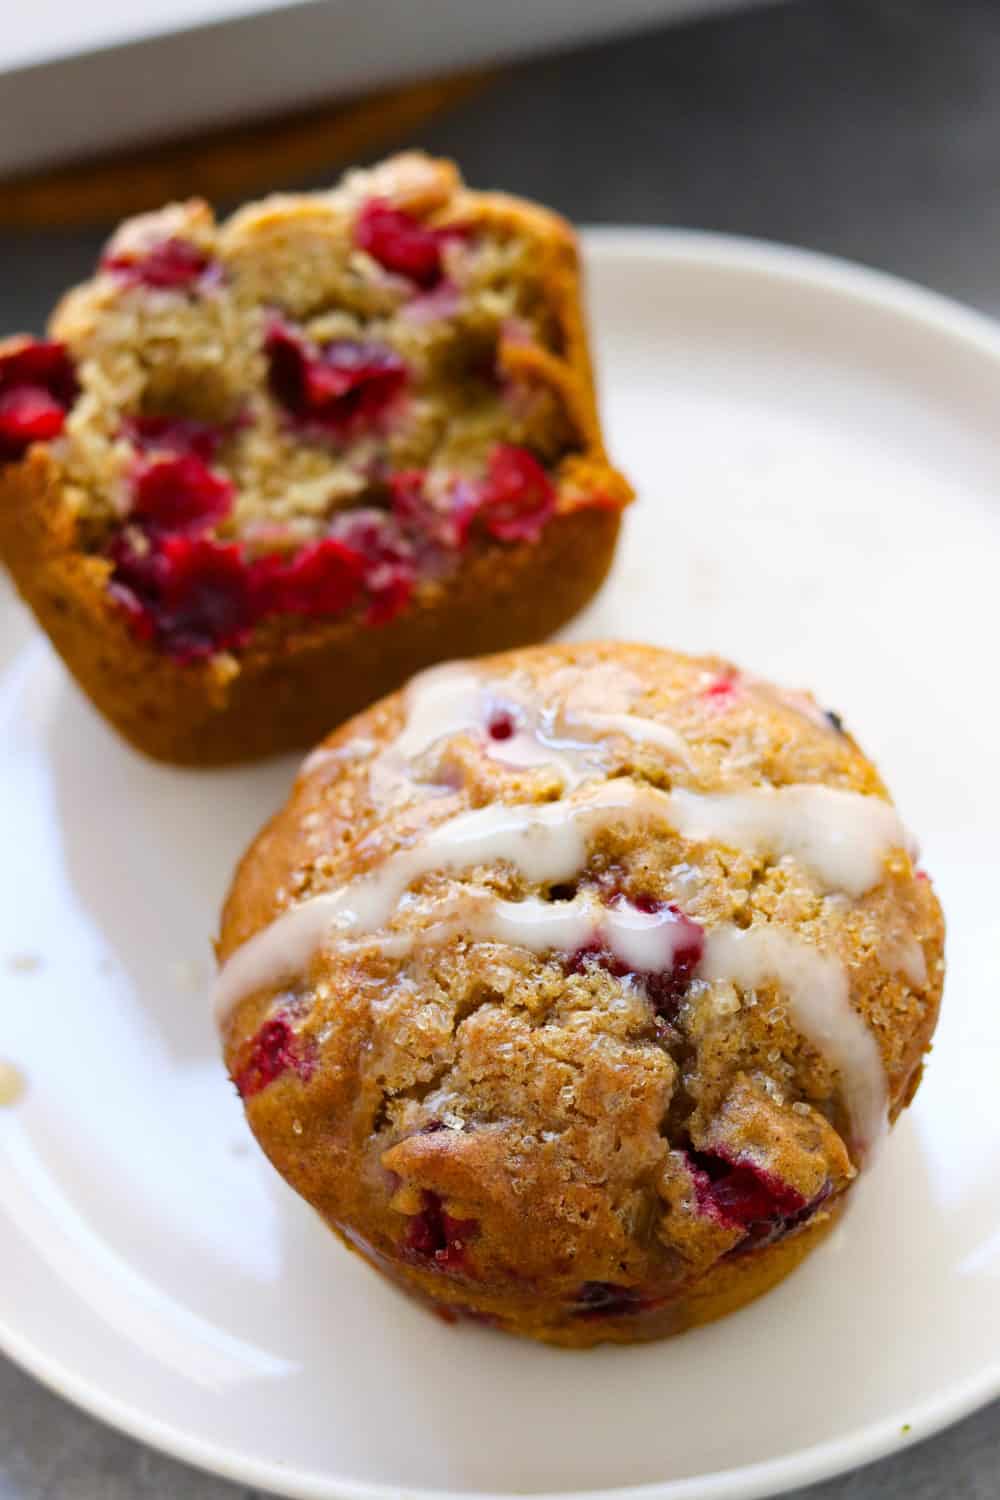  Cranberry orange muffin z glazurą na białym okrągłym talerzu